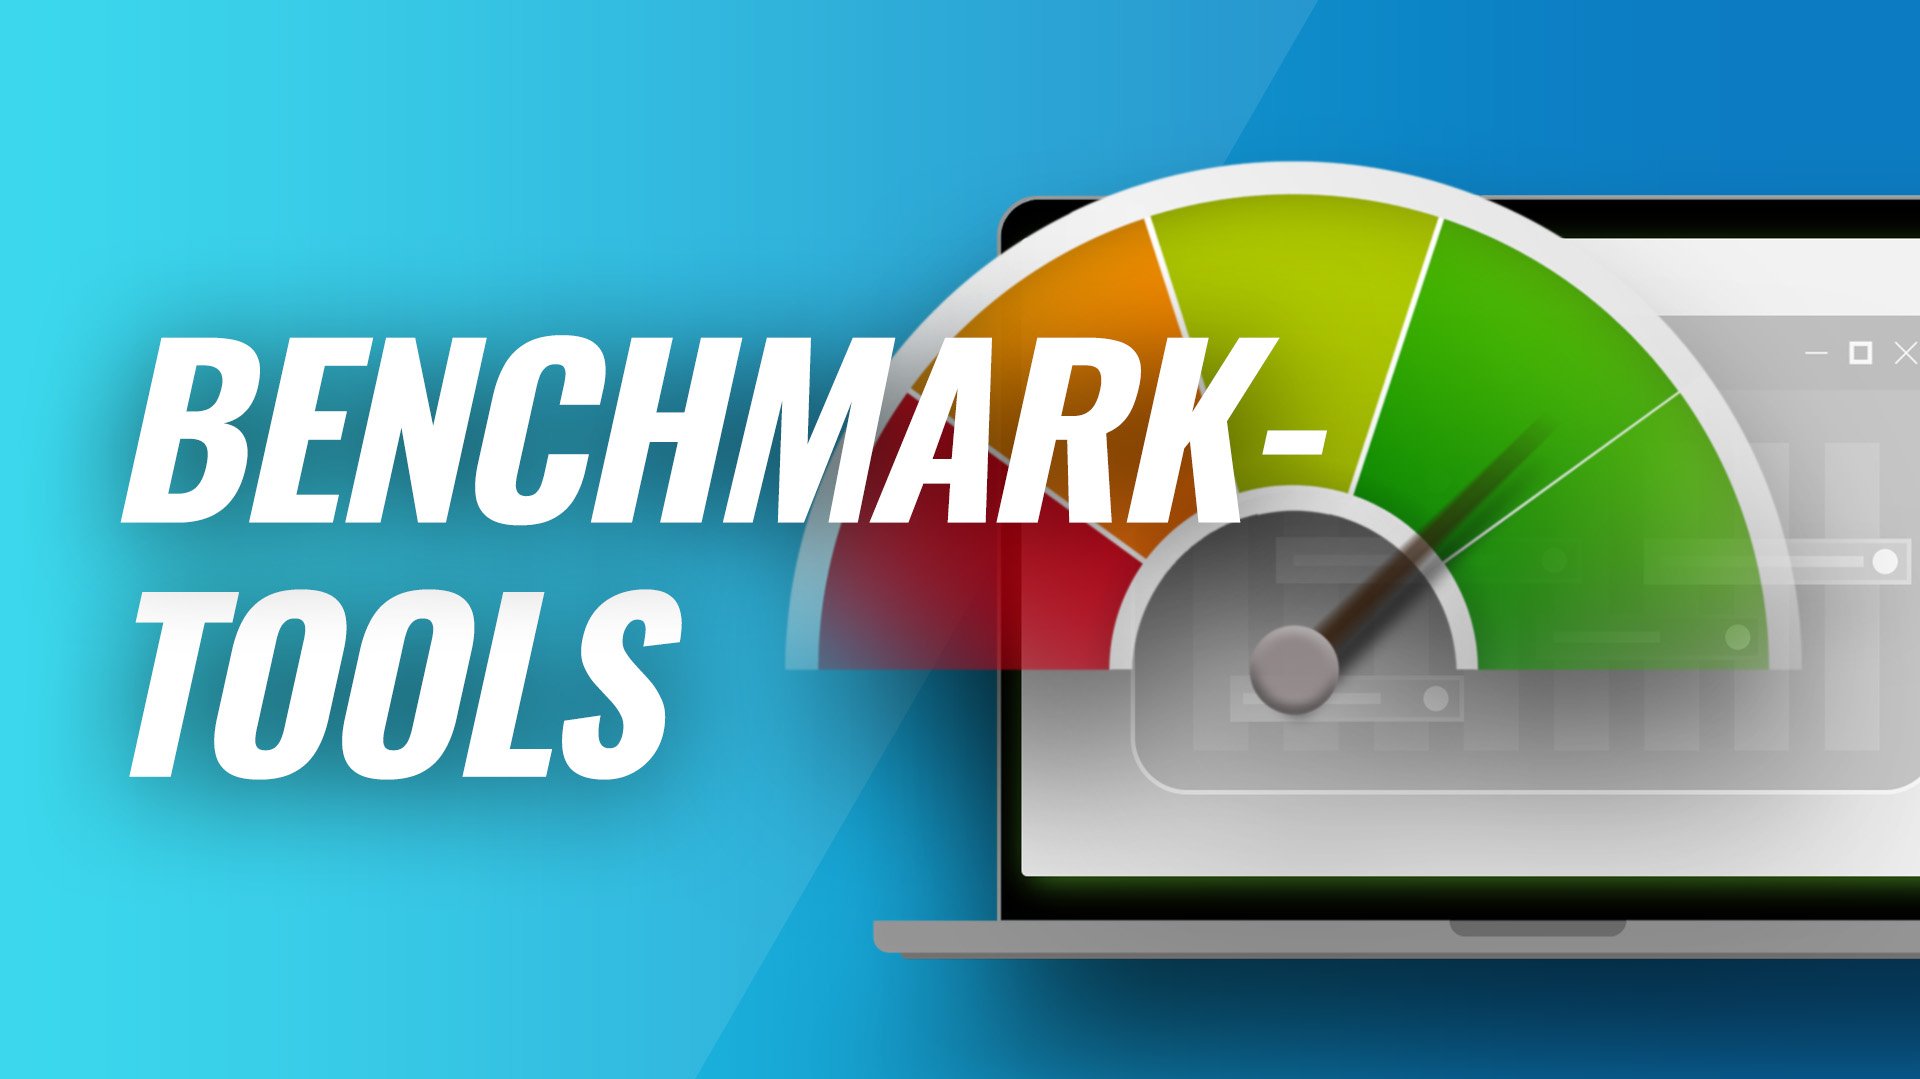 CPU, GPU und Co.: Tools für Benchmark-Tests im Vergleich